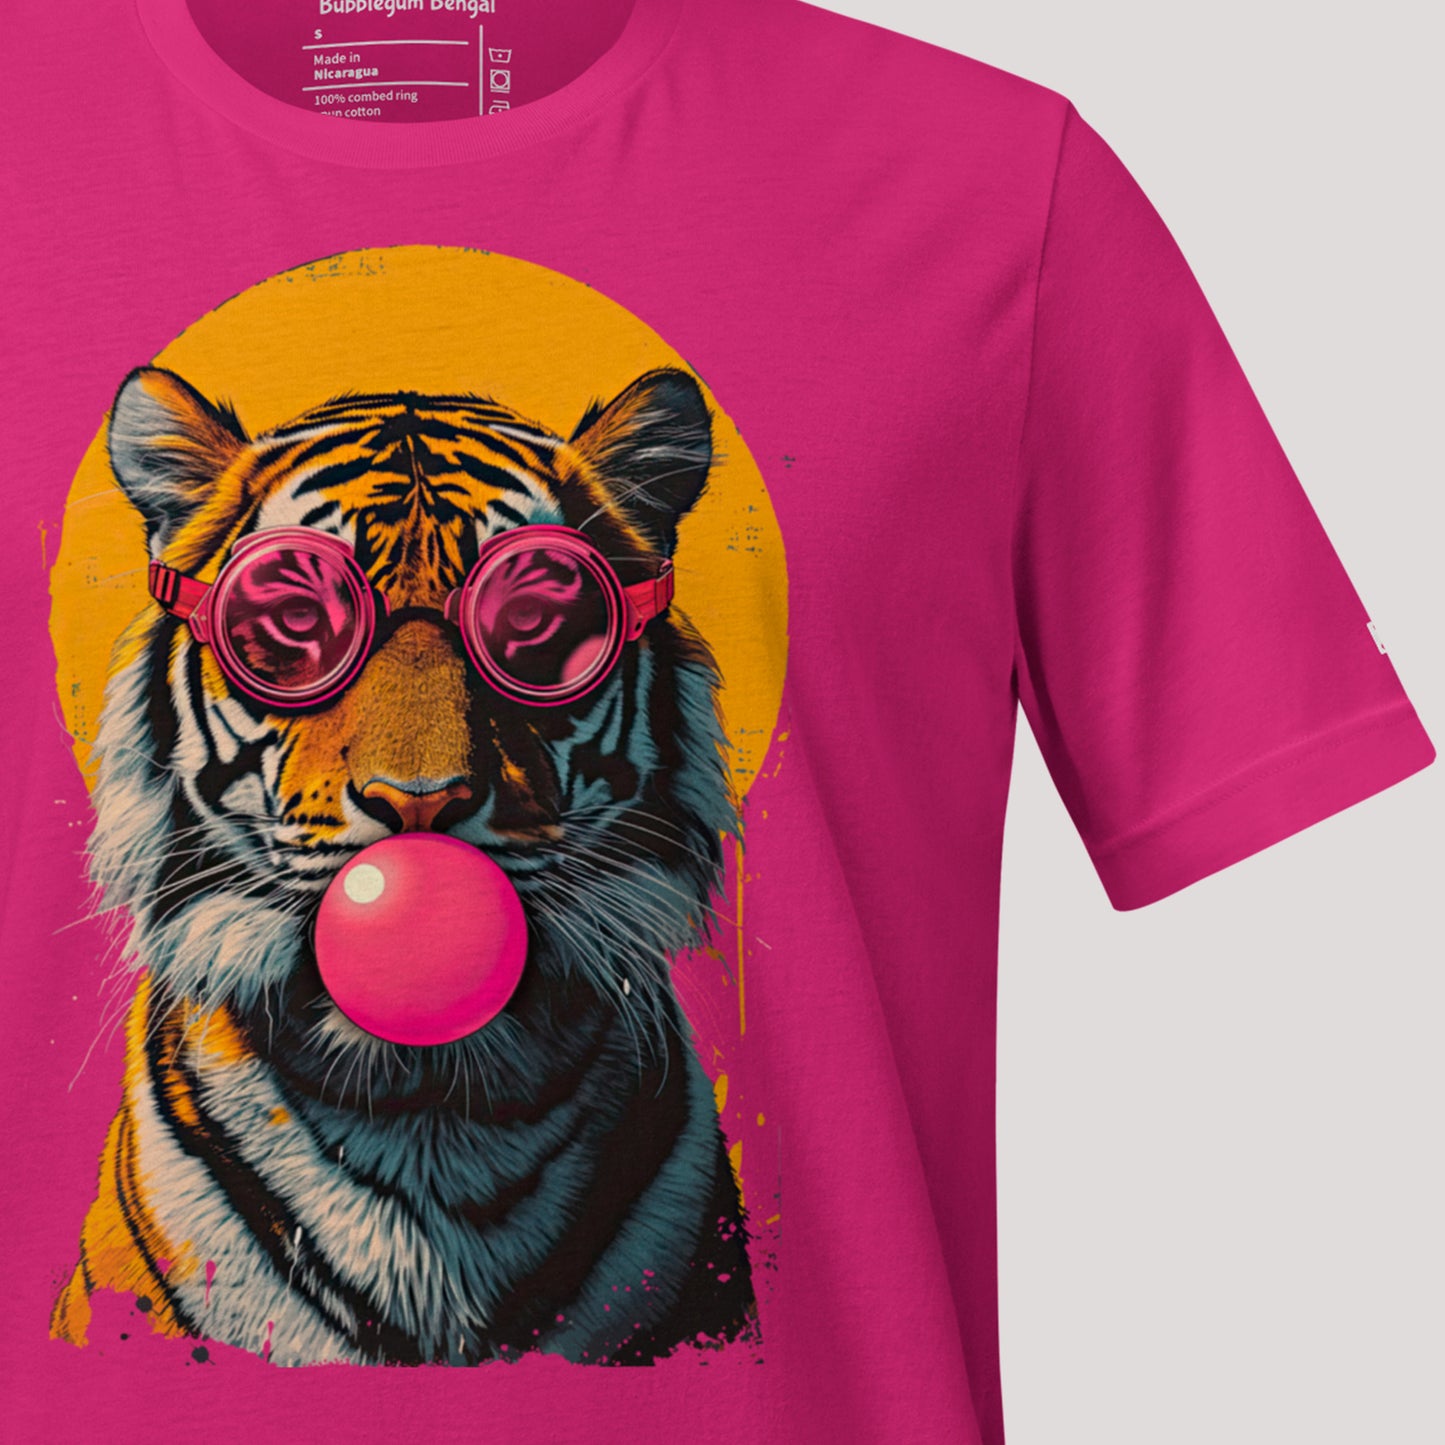 closeup of Bubblegum Bengal Unisex t-shirt art